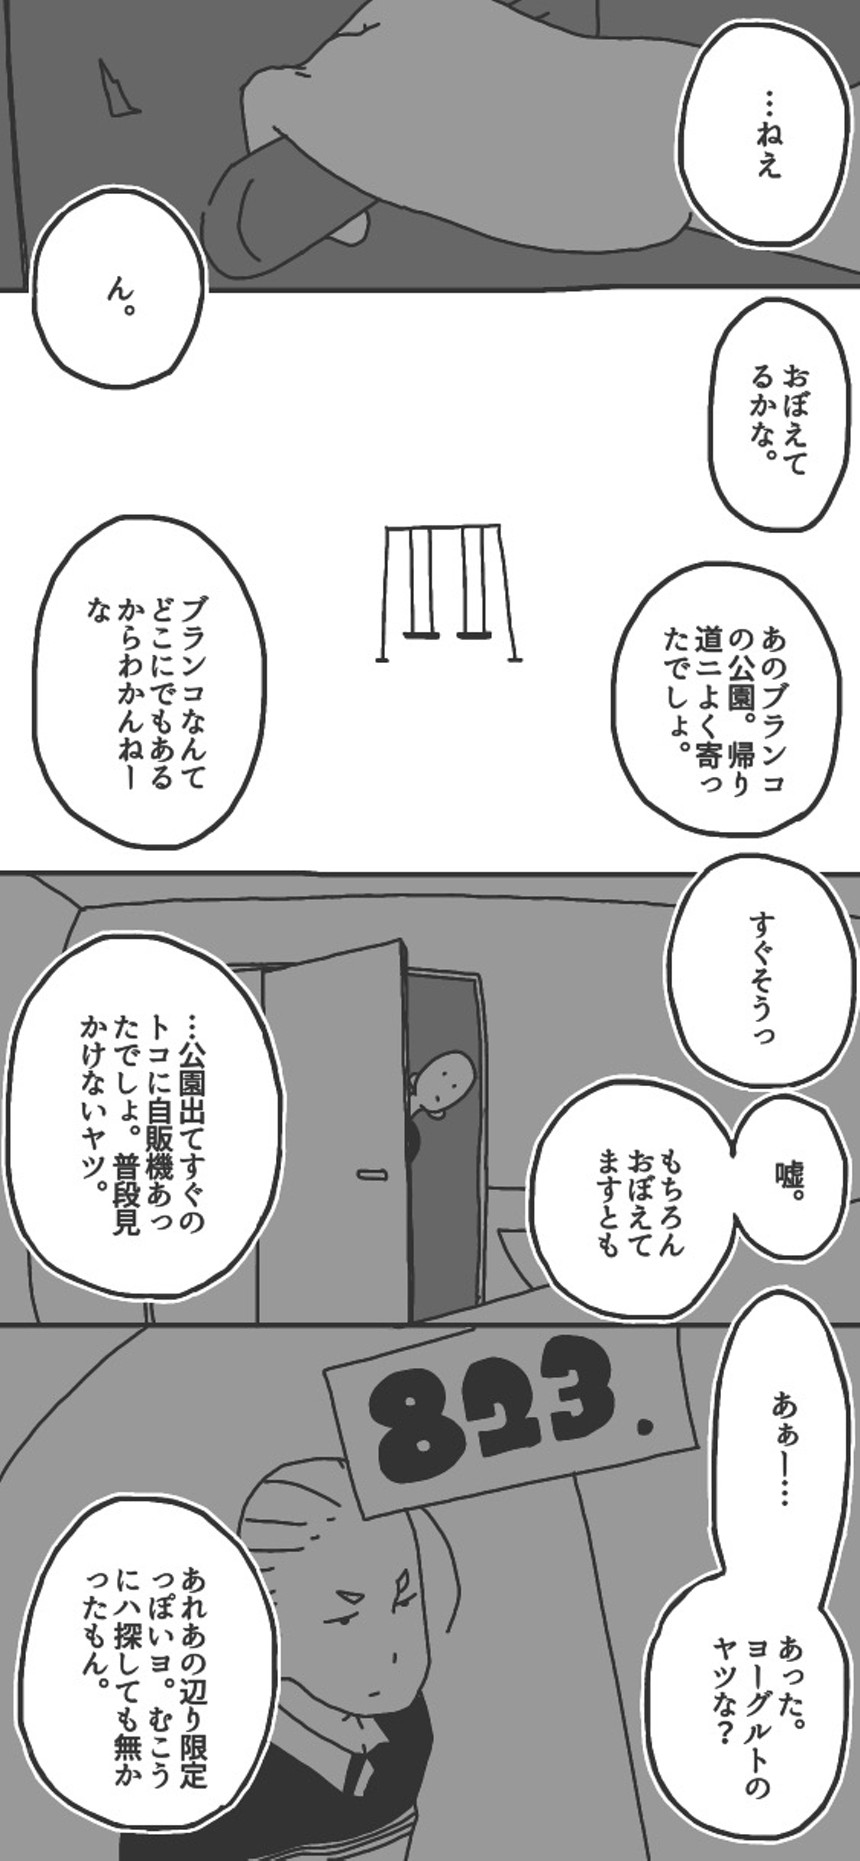 第10話「見エナイ壁ヲ越エテ②▷」（3ページ目）